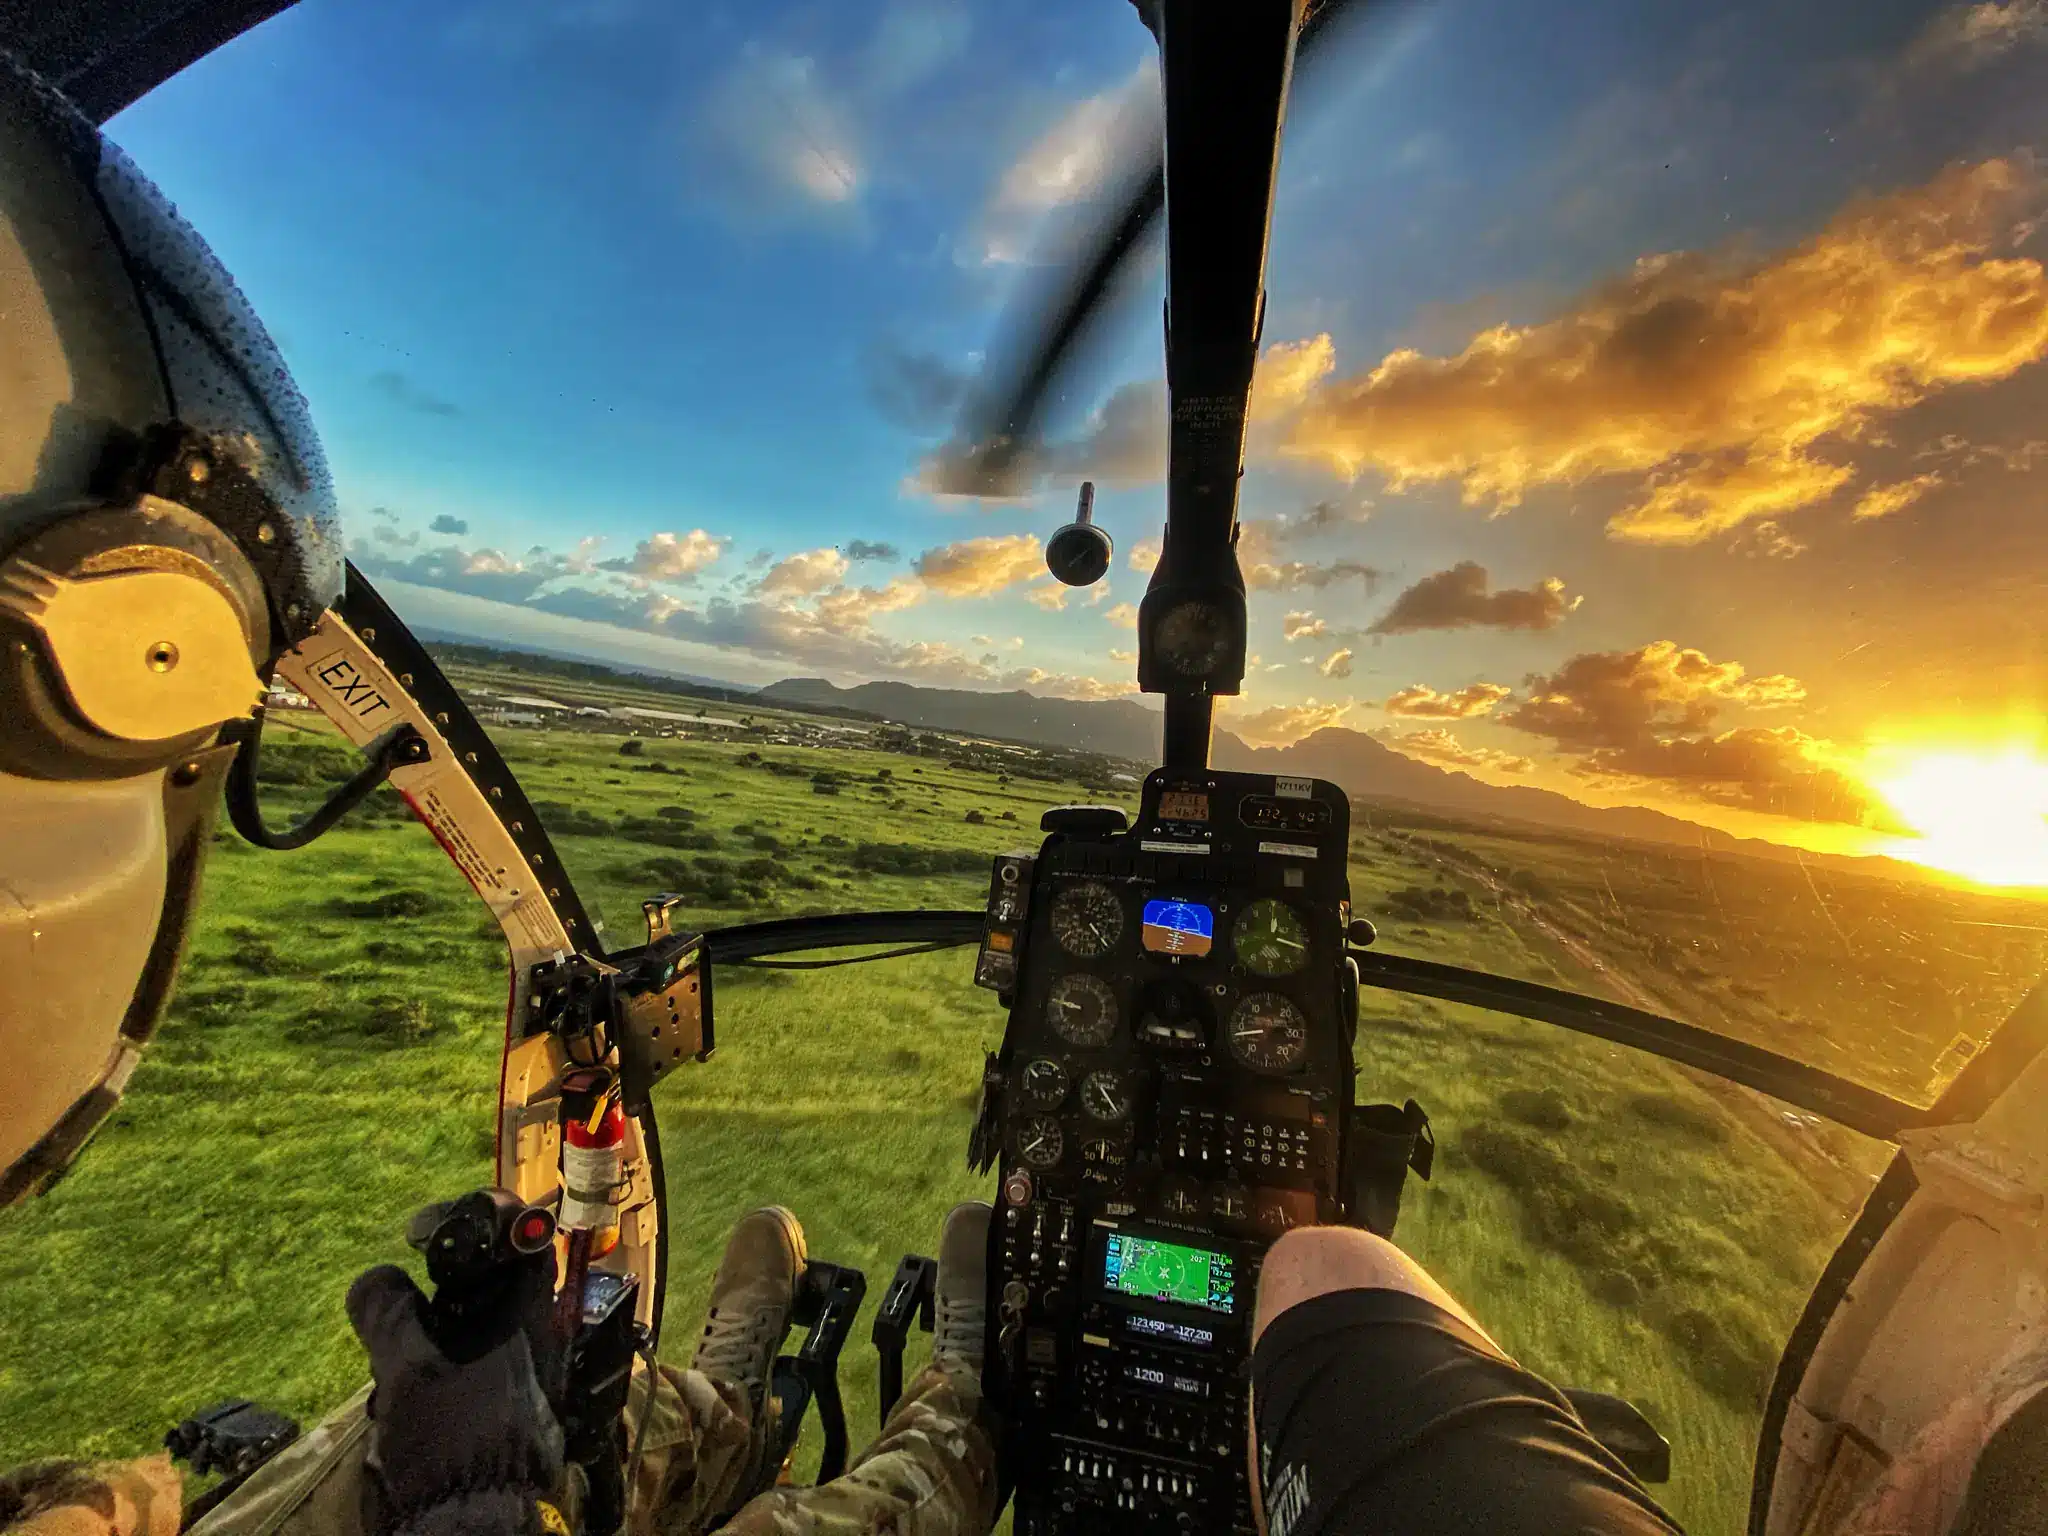 hughes 500 helicopter tour kauai